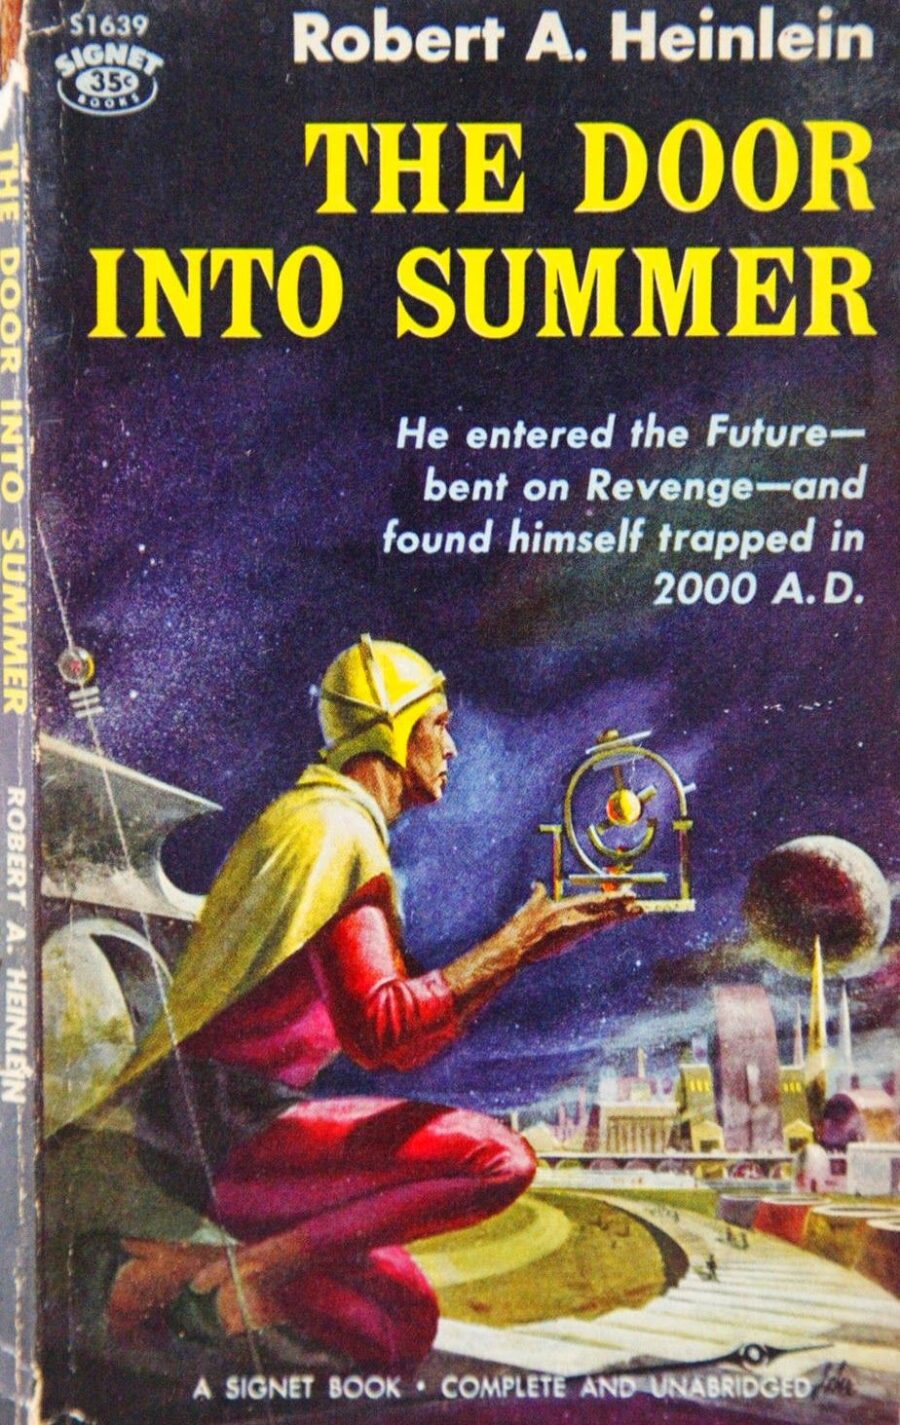 Robert A. Heinlein's The Door into Summer book